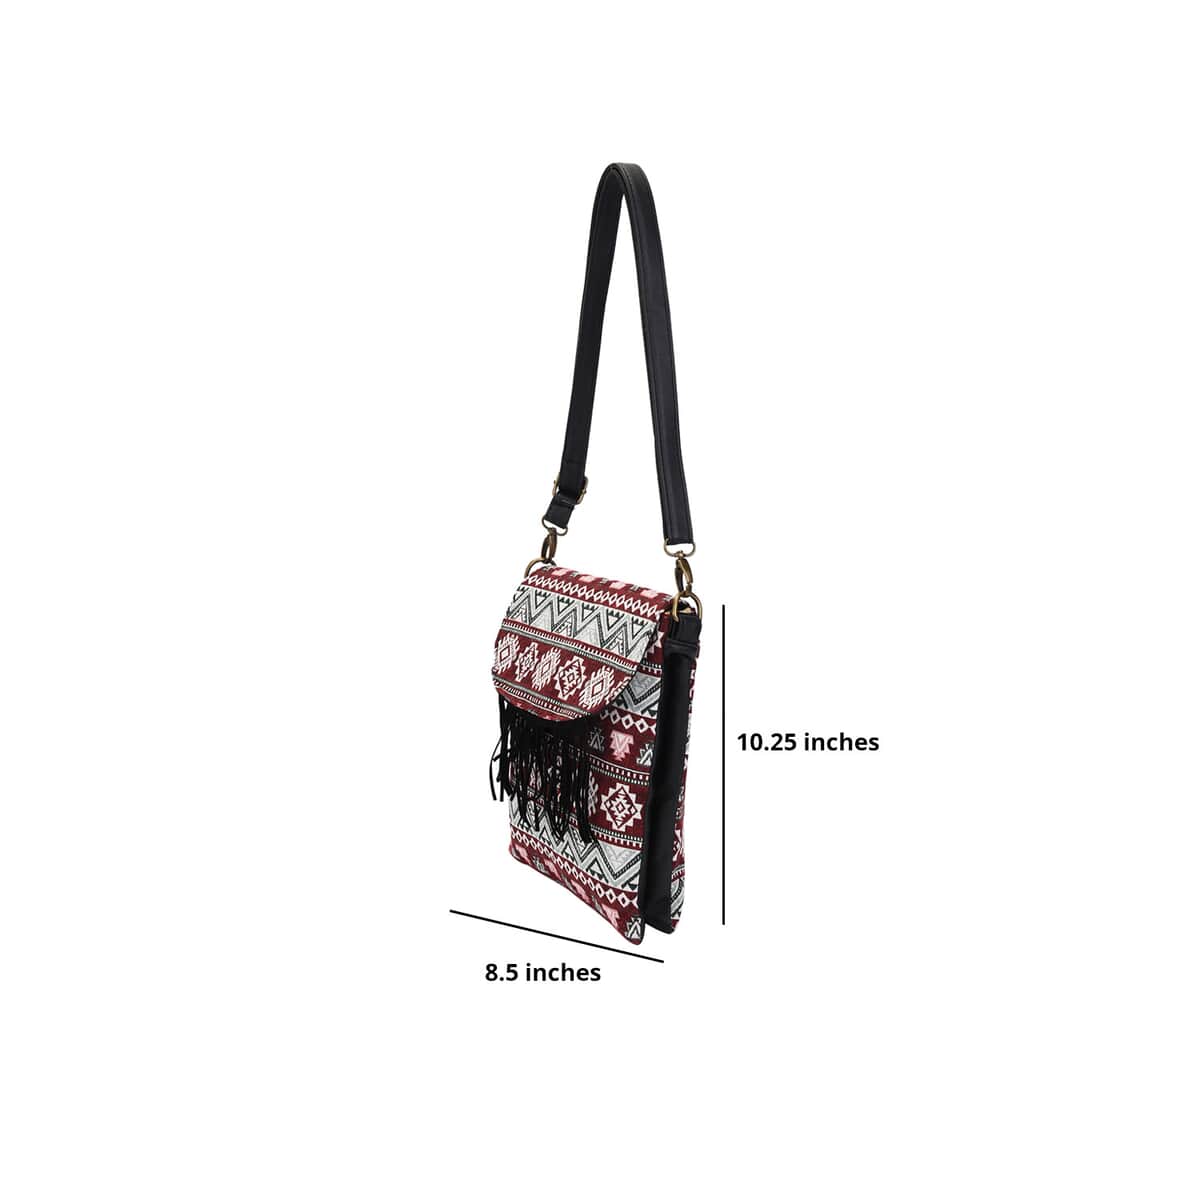 Beige and Santa Fe Pattern Crossbody Bag (8.5"x10.25") with Shoulder Strap image number 3